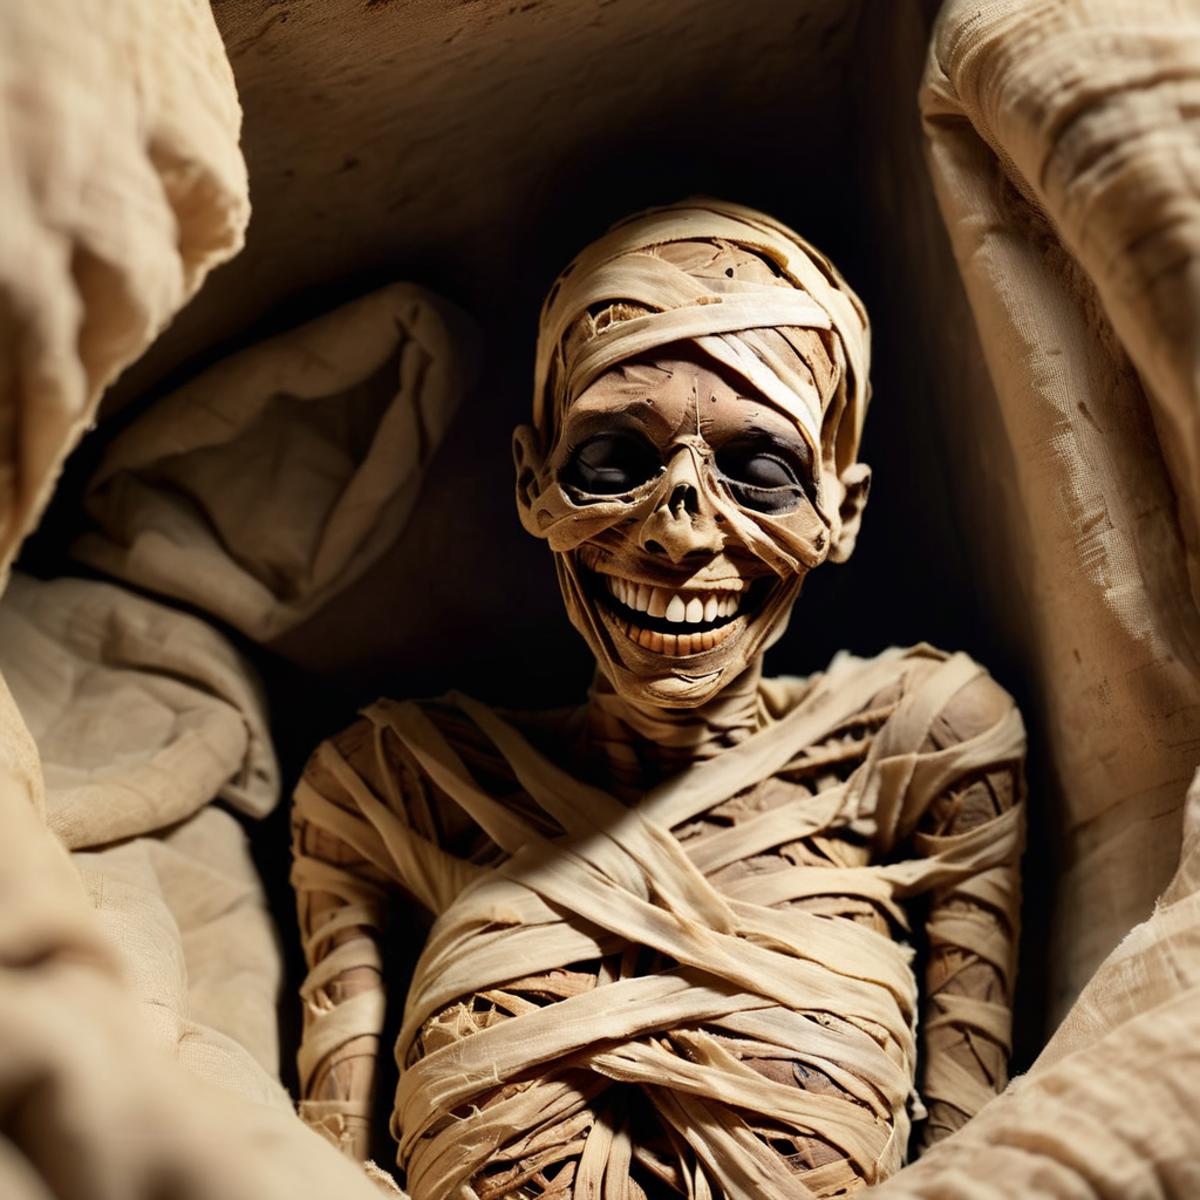 Mummy image by Sa_May